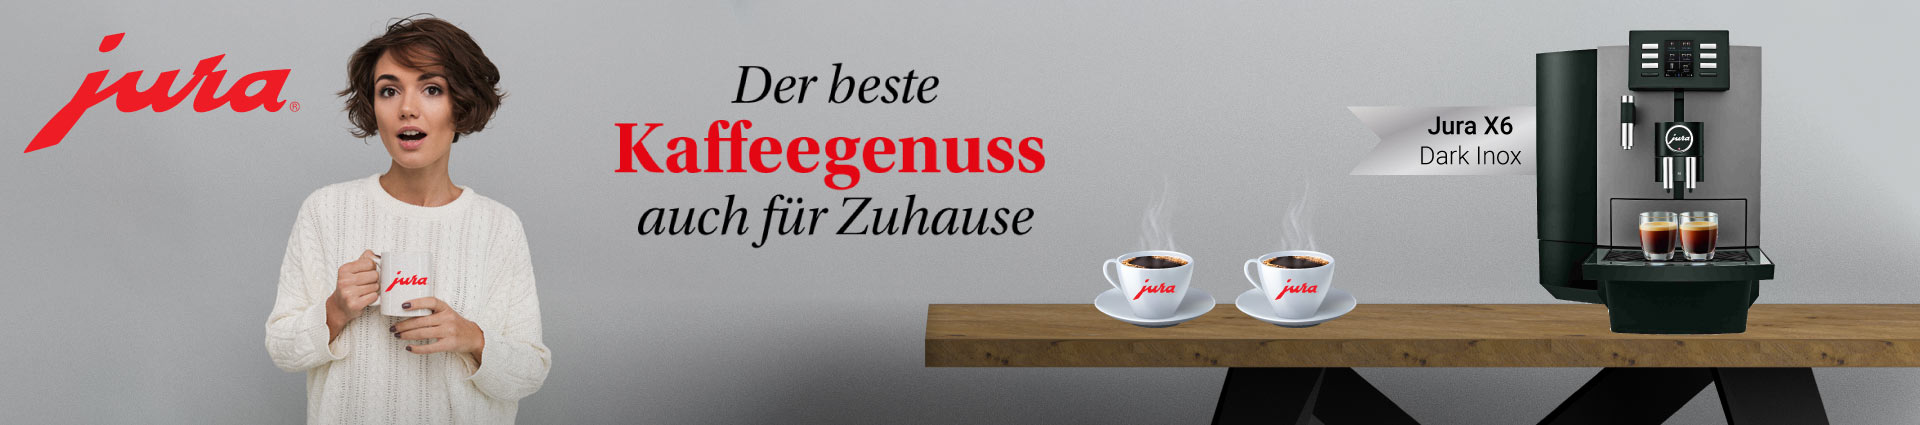 JURA X6 Banner Kaffeegenuss